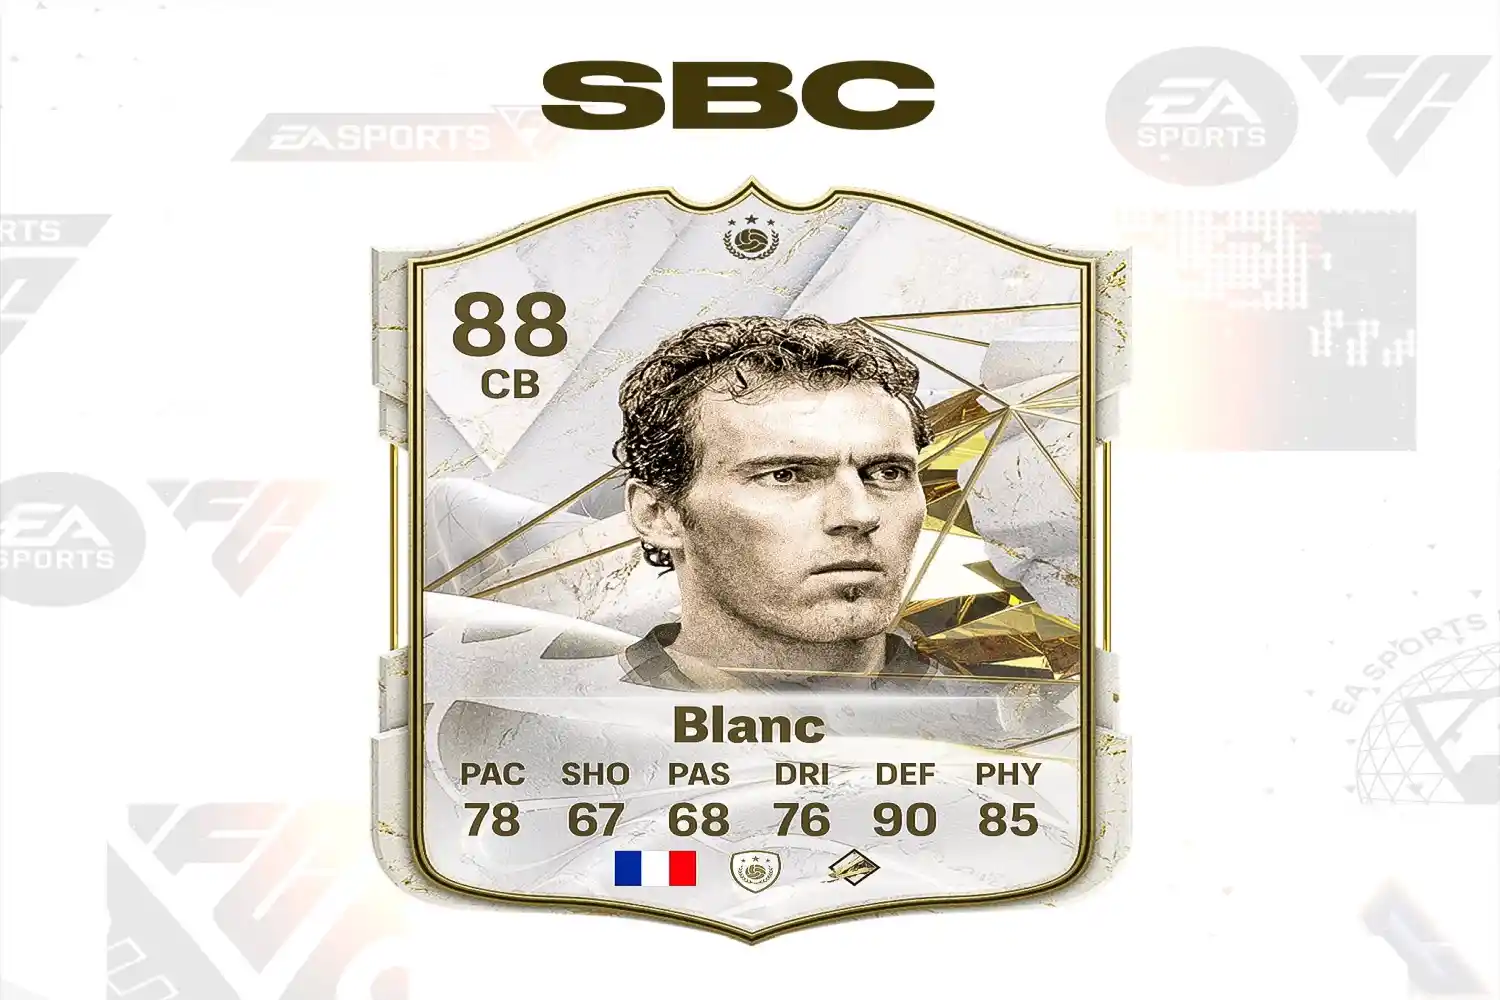 EA FC 24 Ultimate Team: come ottenere Laurent Blanc Icona - migliori soluzioni SBC